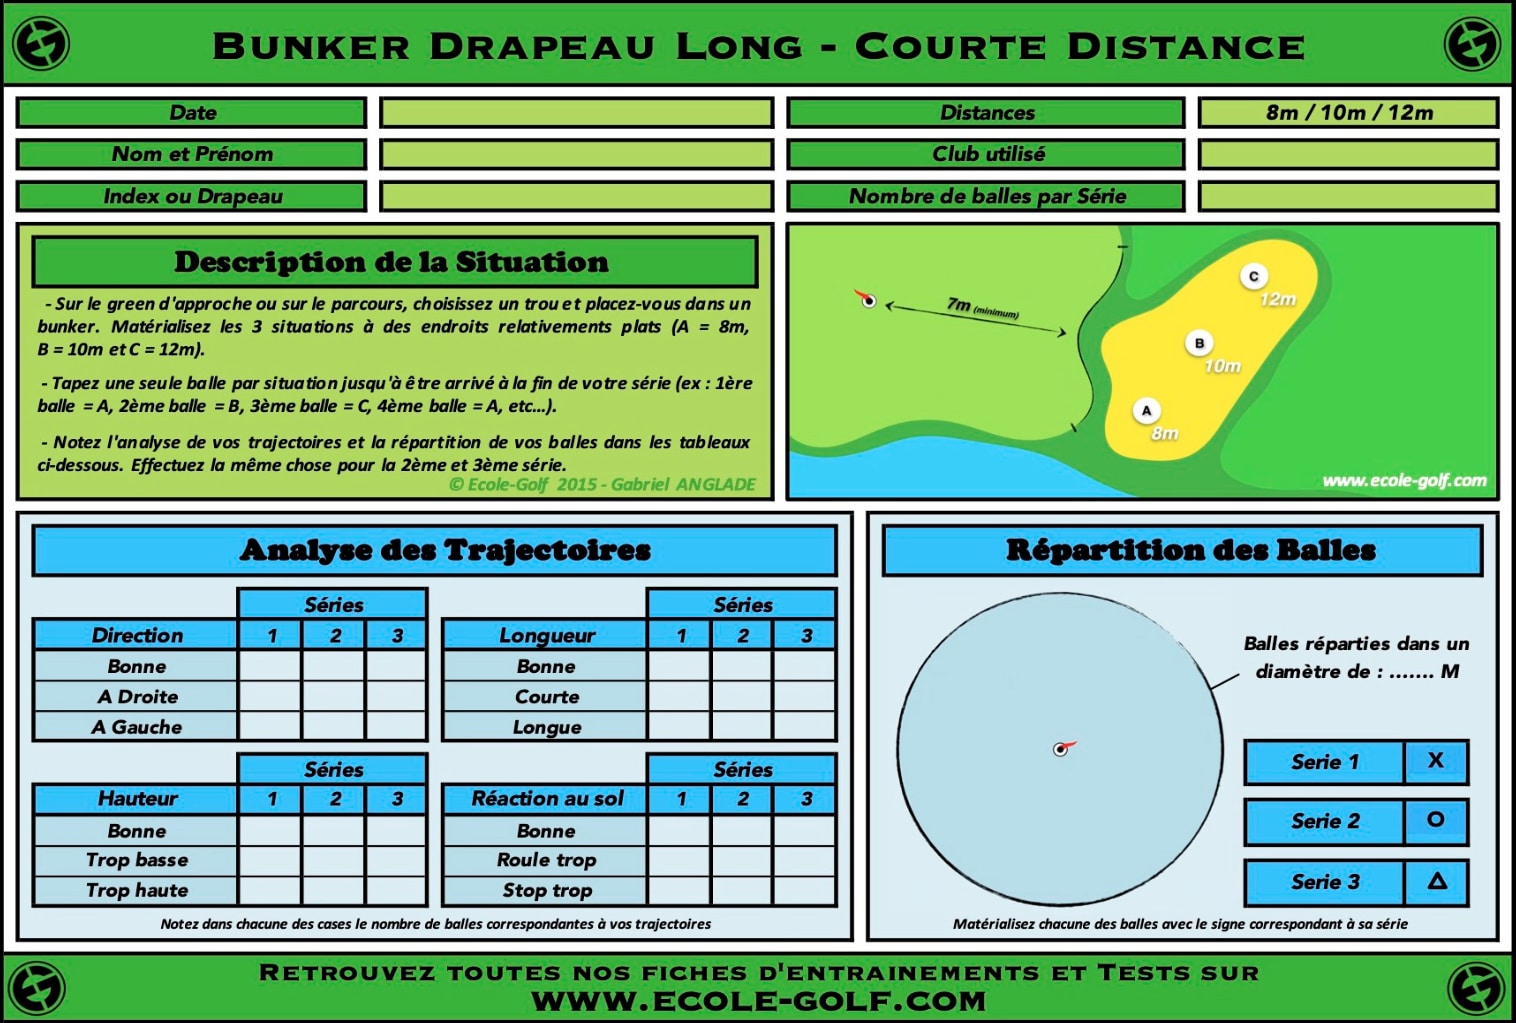 Bunker Drapeau Long - Courte Distance